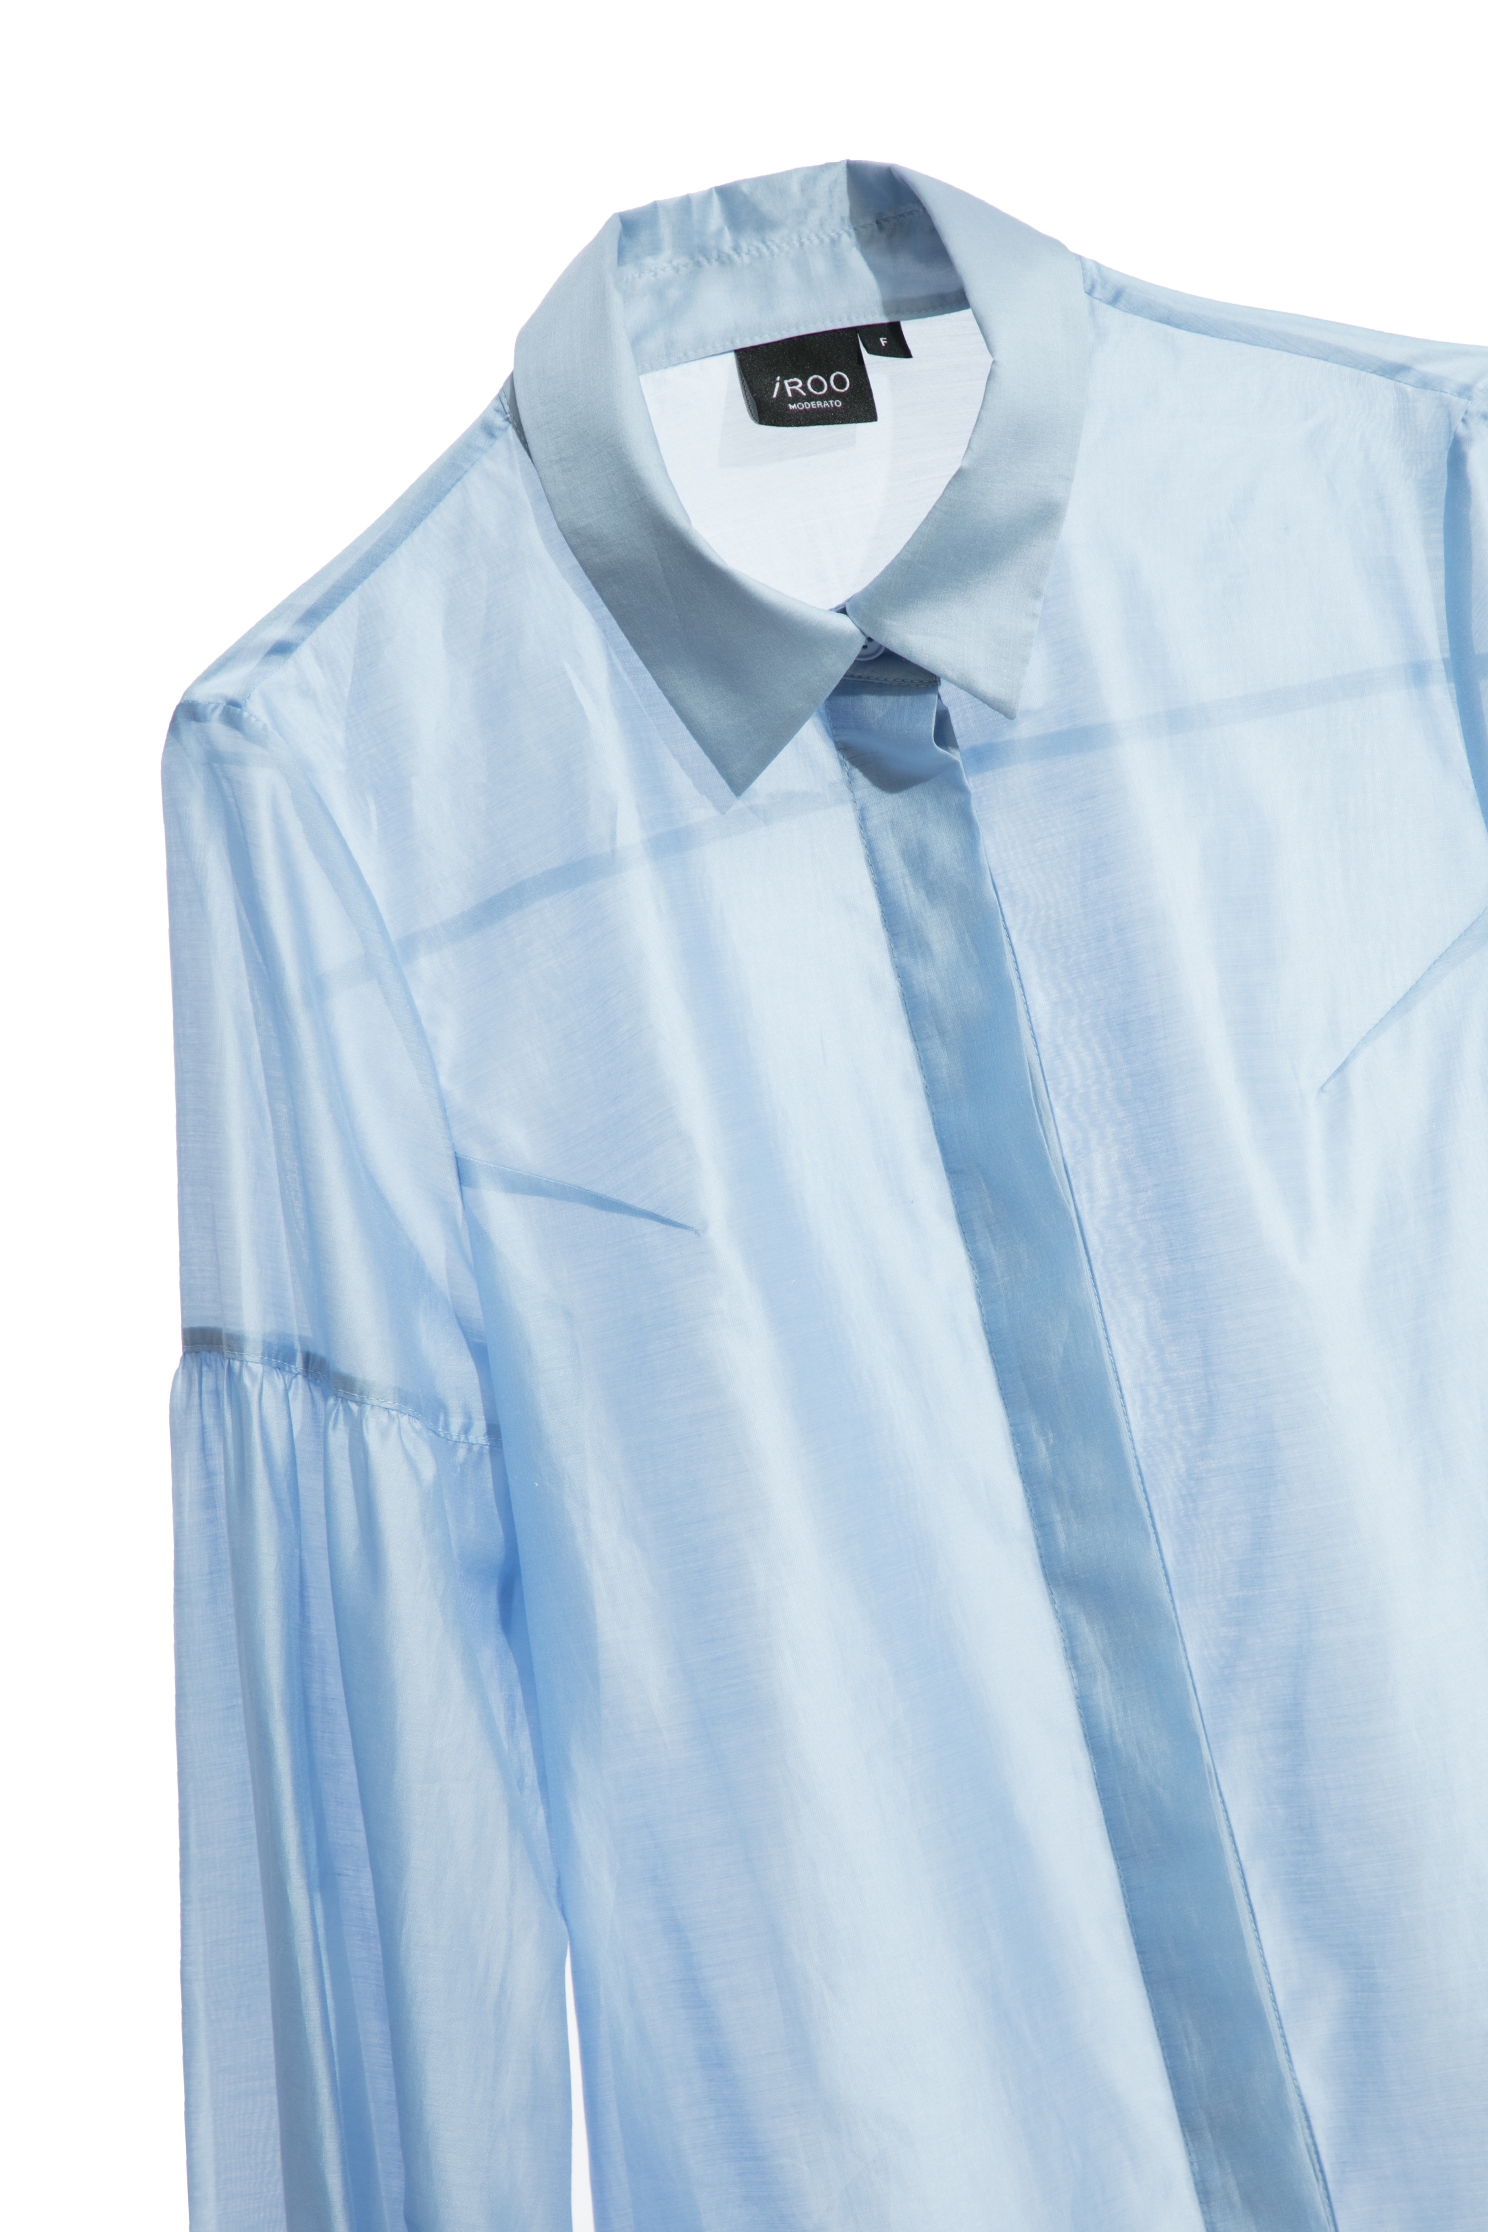 寧靜藍絲光棉拋袖襯衫寧靜藍絲光棉拋袖襯衫,上班穿搭,春夏穿搭,襯衫